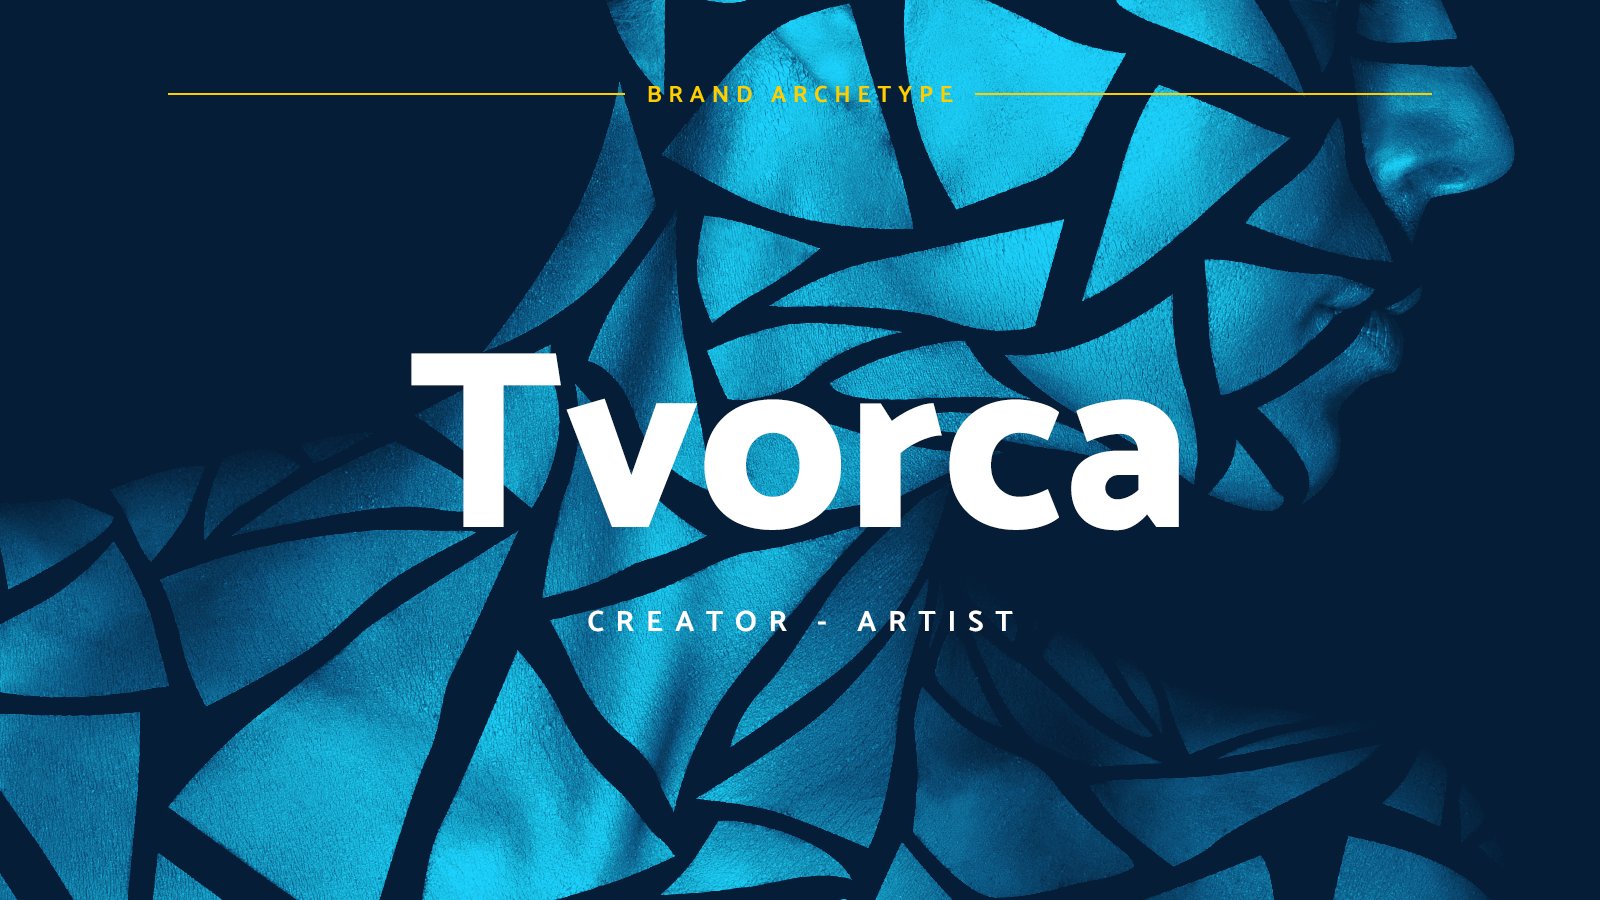 Brand archetypy: TVORCA